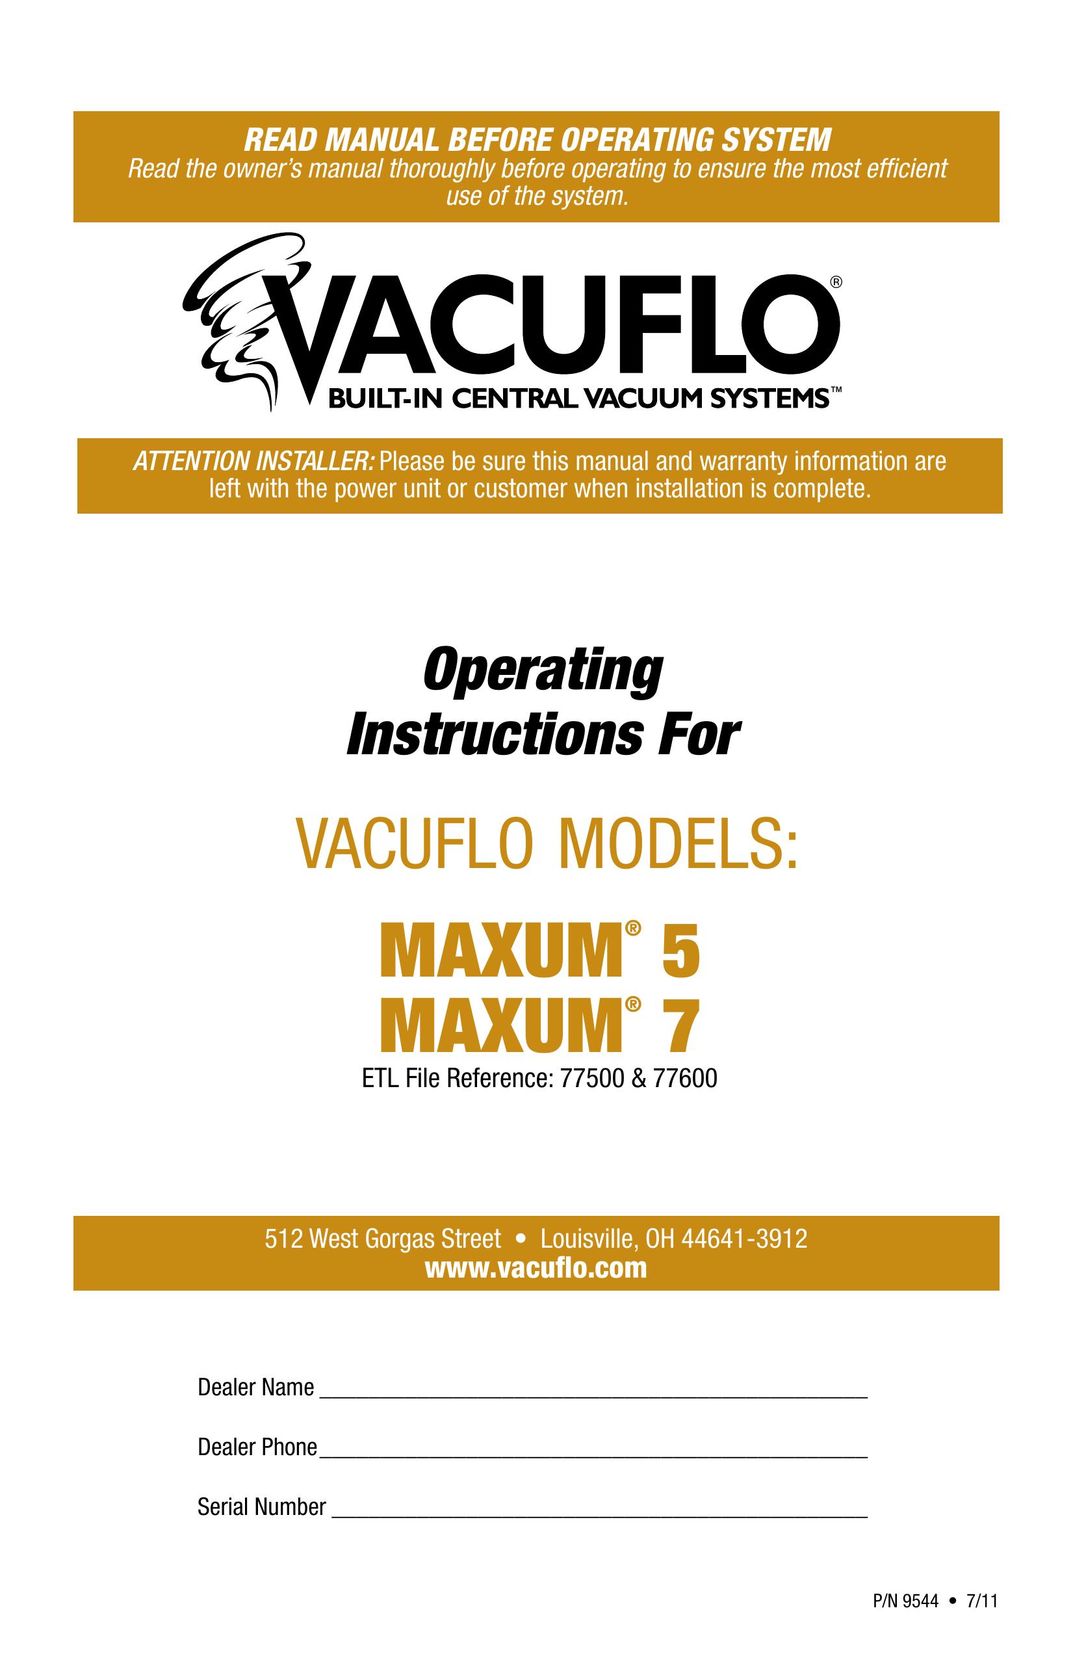 Vacuflo MAXUM 7 Vacuum Cleaner User Manual